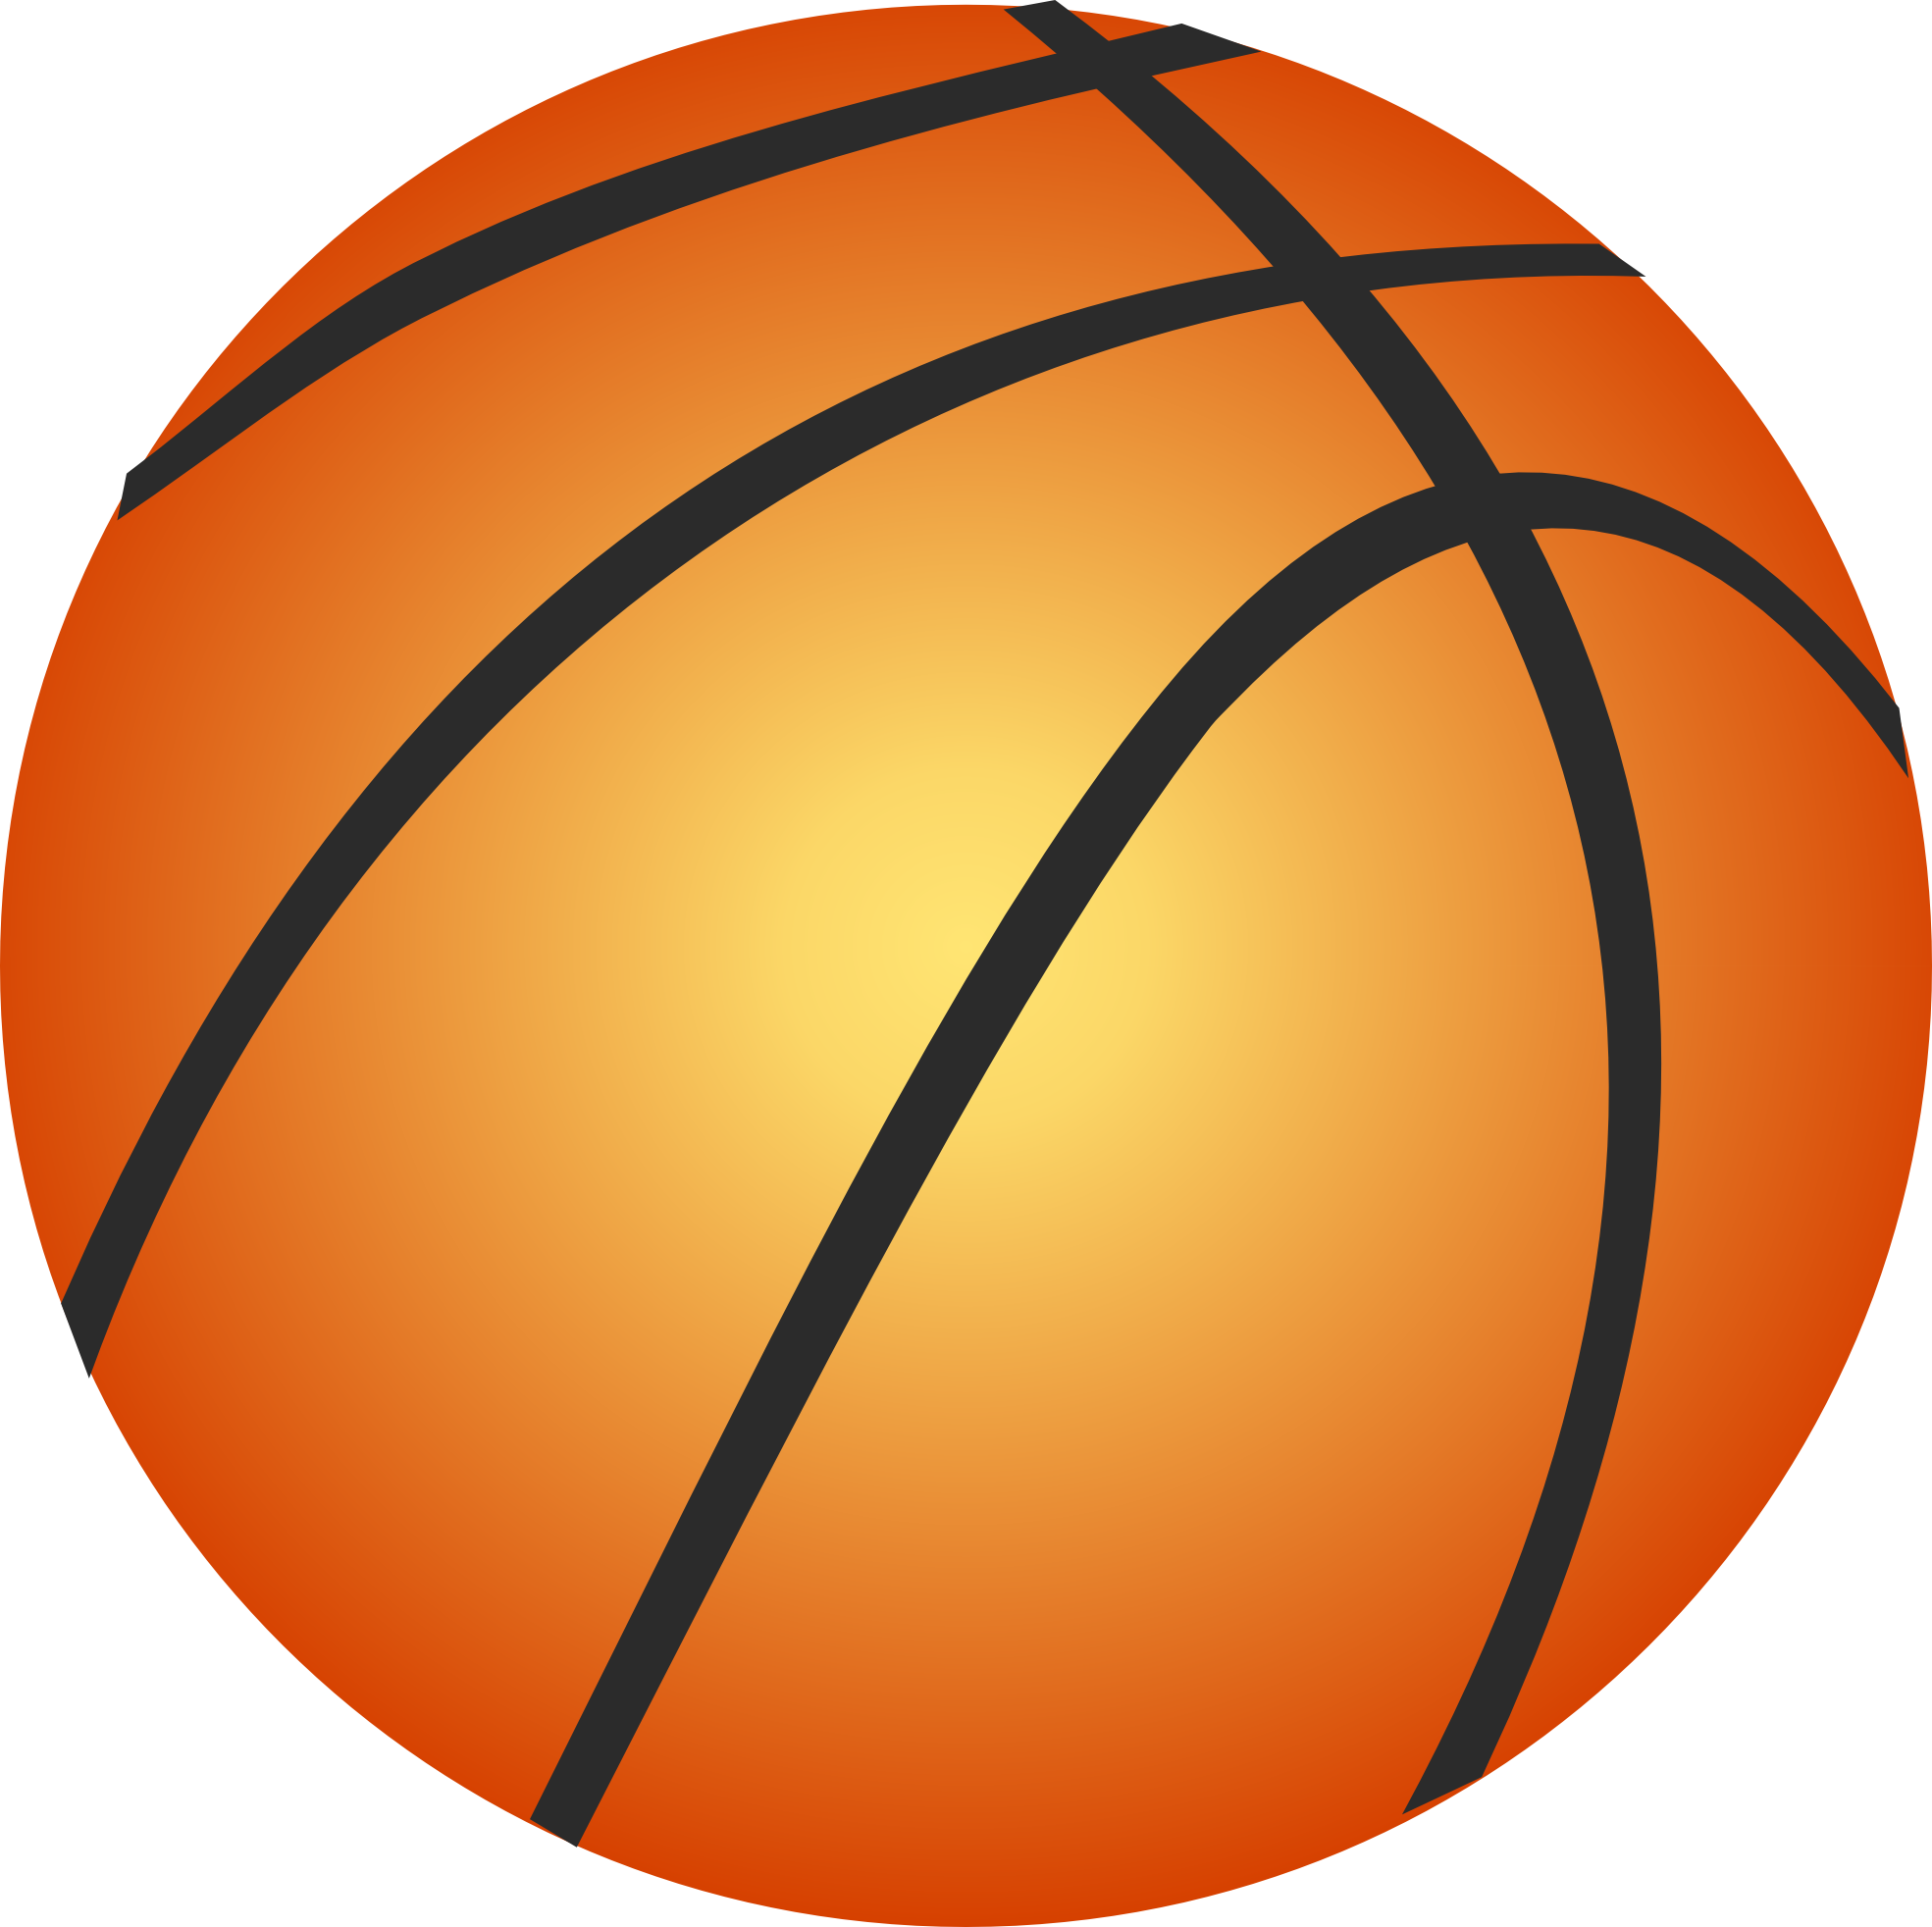 Basketball Ball Cartoon - ClipArt Best